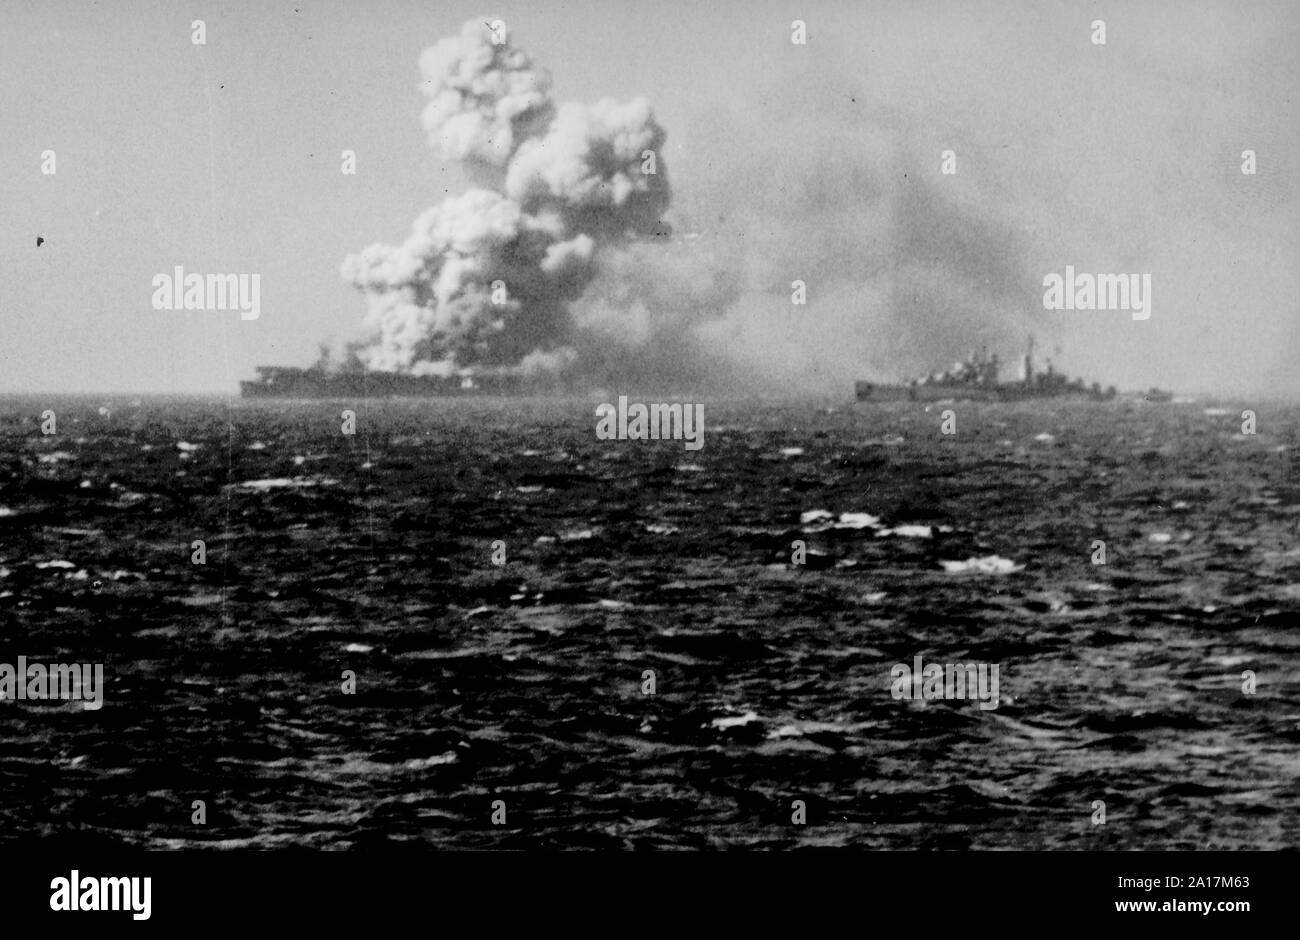 La battaglia di Leyte golfo, la più grande battaglia navale della Seconda Guerra Mondiale. Gli Stati Uniti Luce della marina militare portaerei USS Princeton (CVL-23) bruciore subito dopo lei è stato colpito da una bomba giapponese durante il funzionamento off filippine il 24 ottobre 1944 Foto Stock